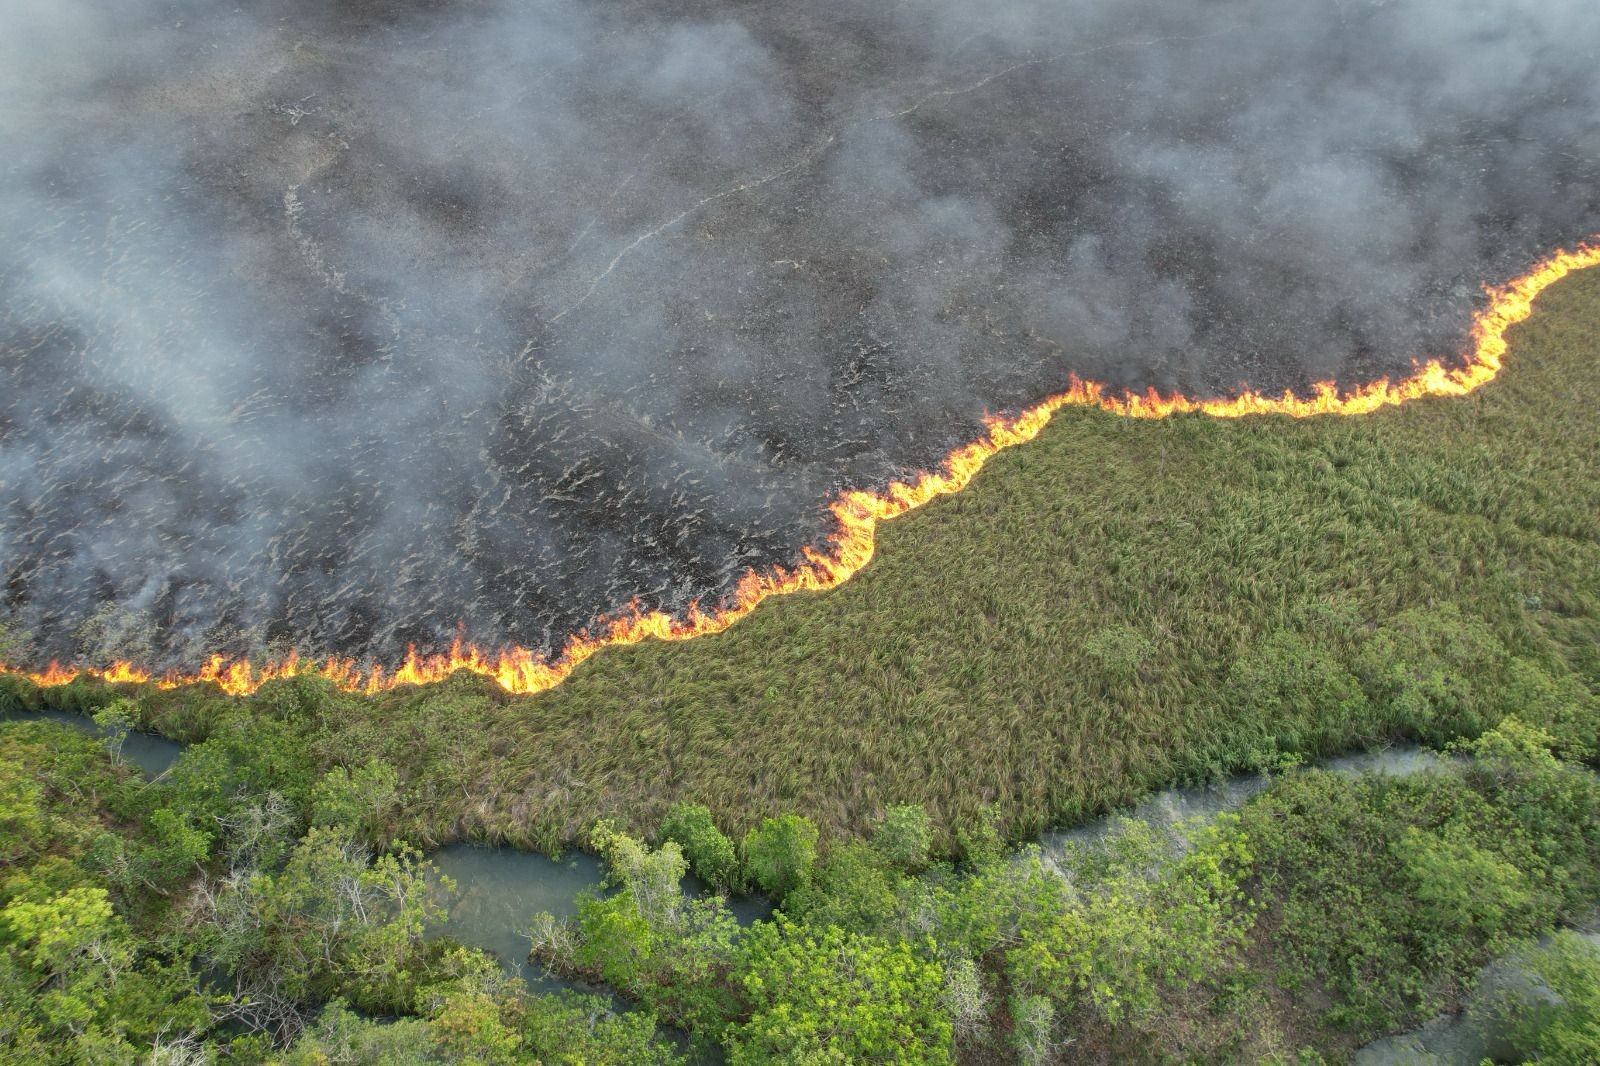 Há 4 dias em chamas, fogo já destruiu 500 hectares de vegetação em área ao lado de rio cristalino em Bonito